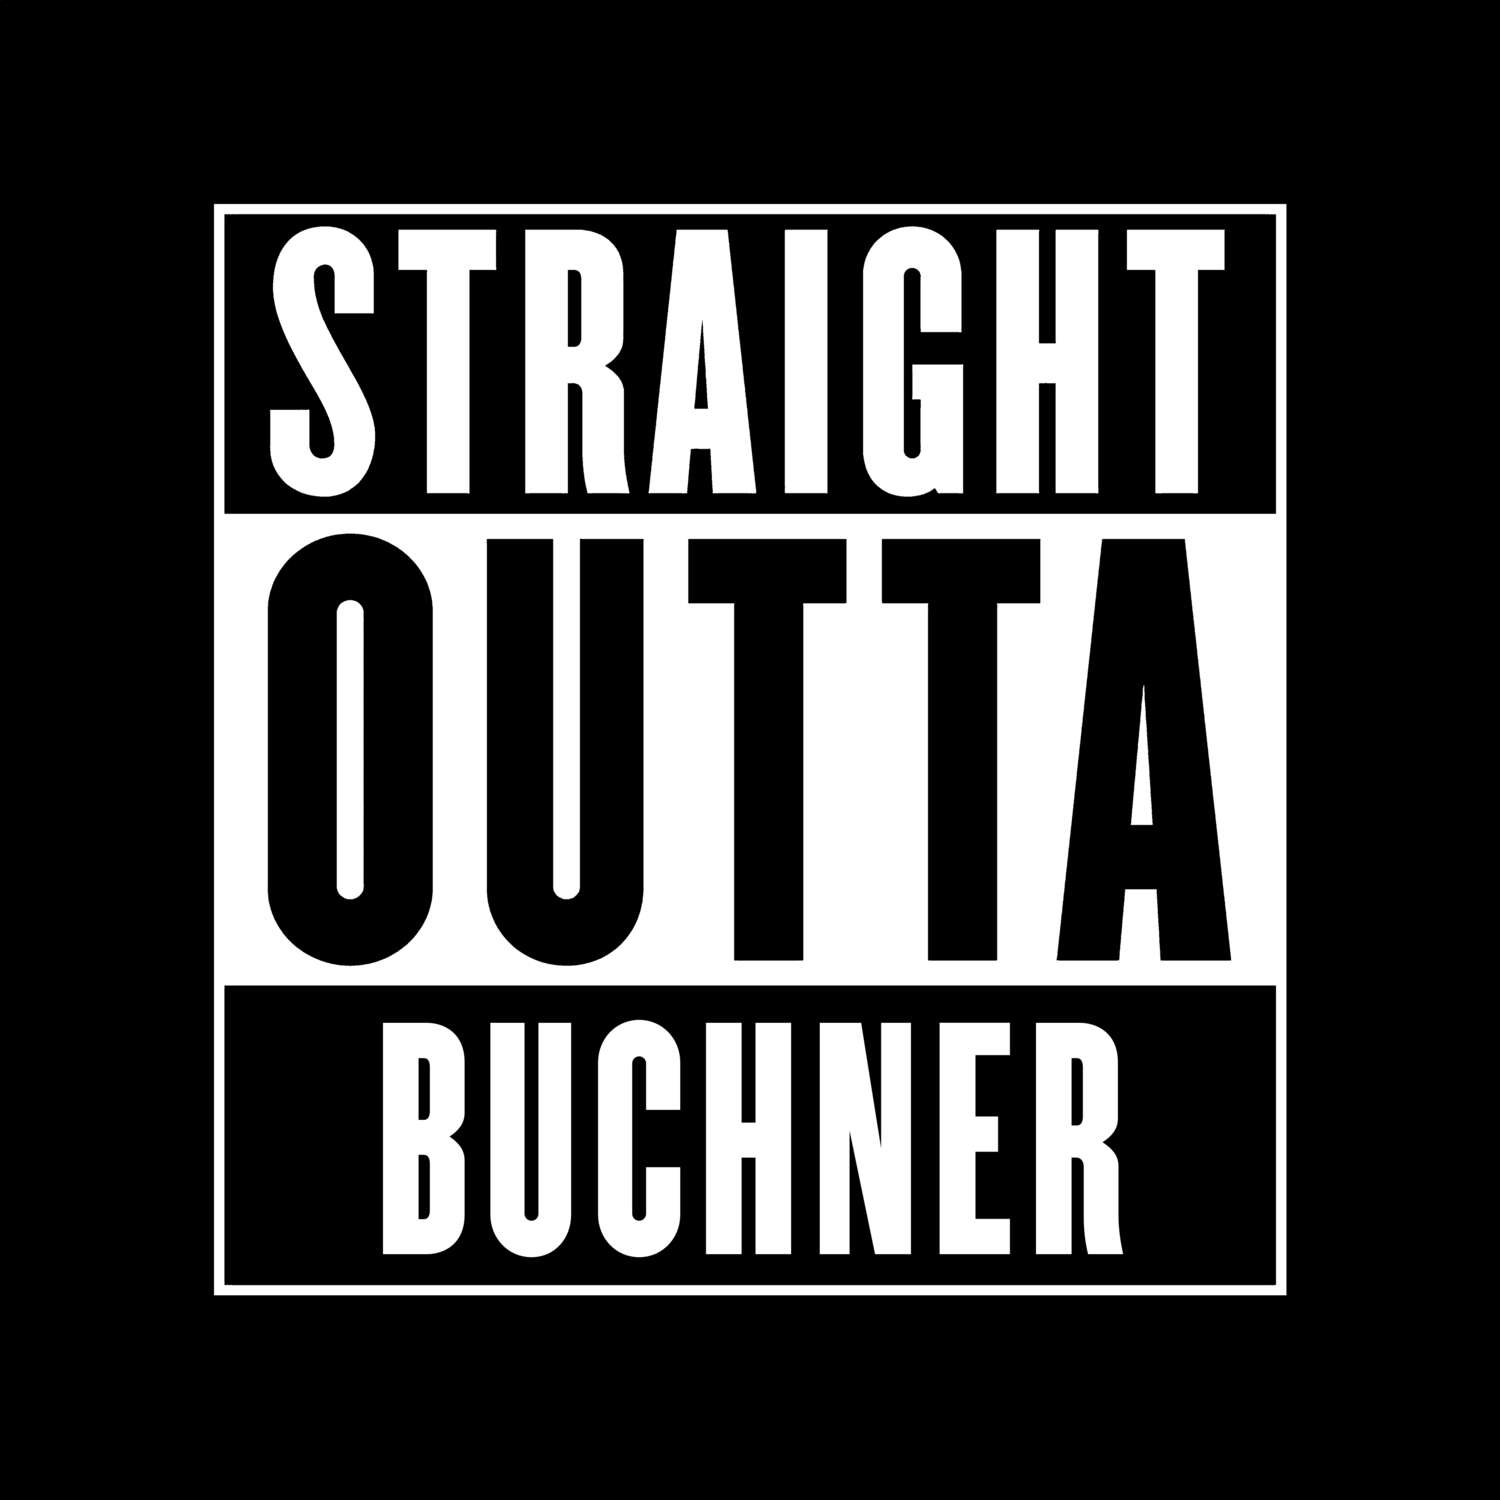 Buchner T-Shirt »Straight Outta«